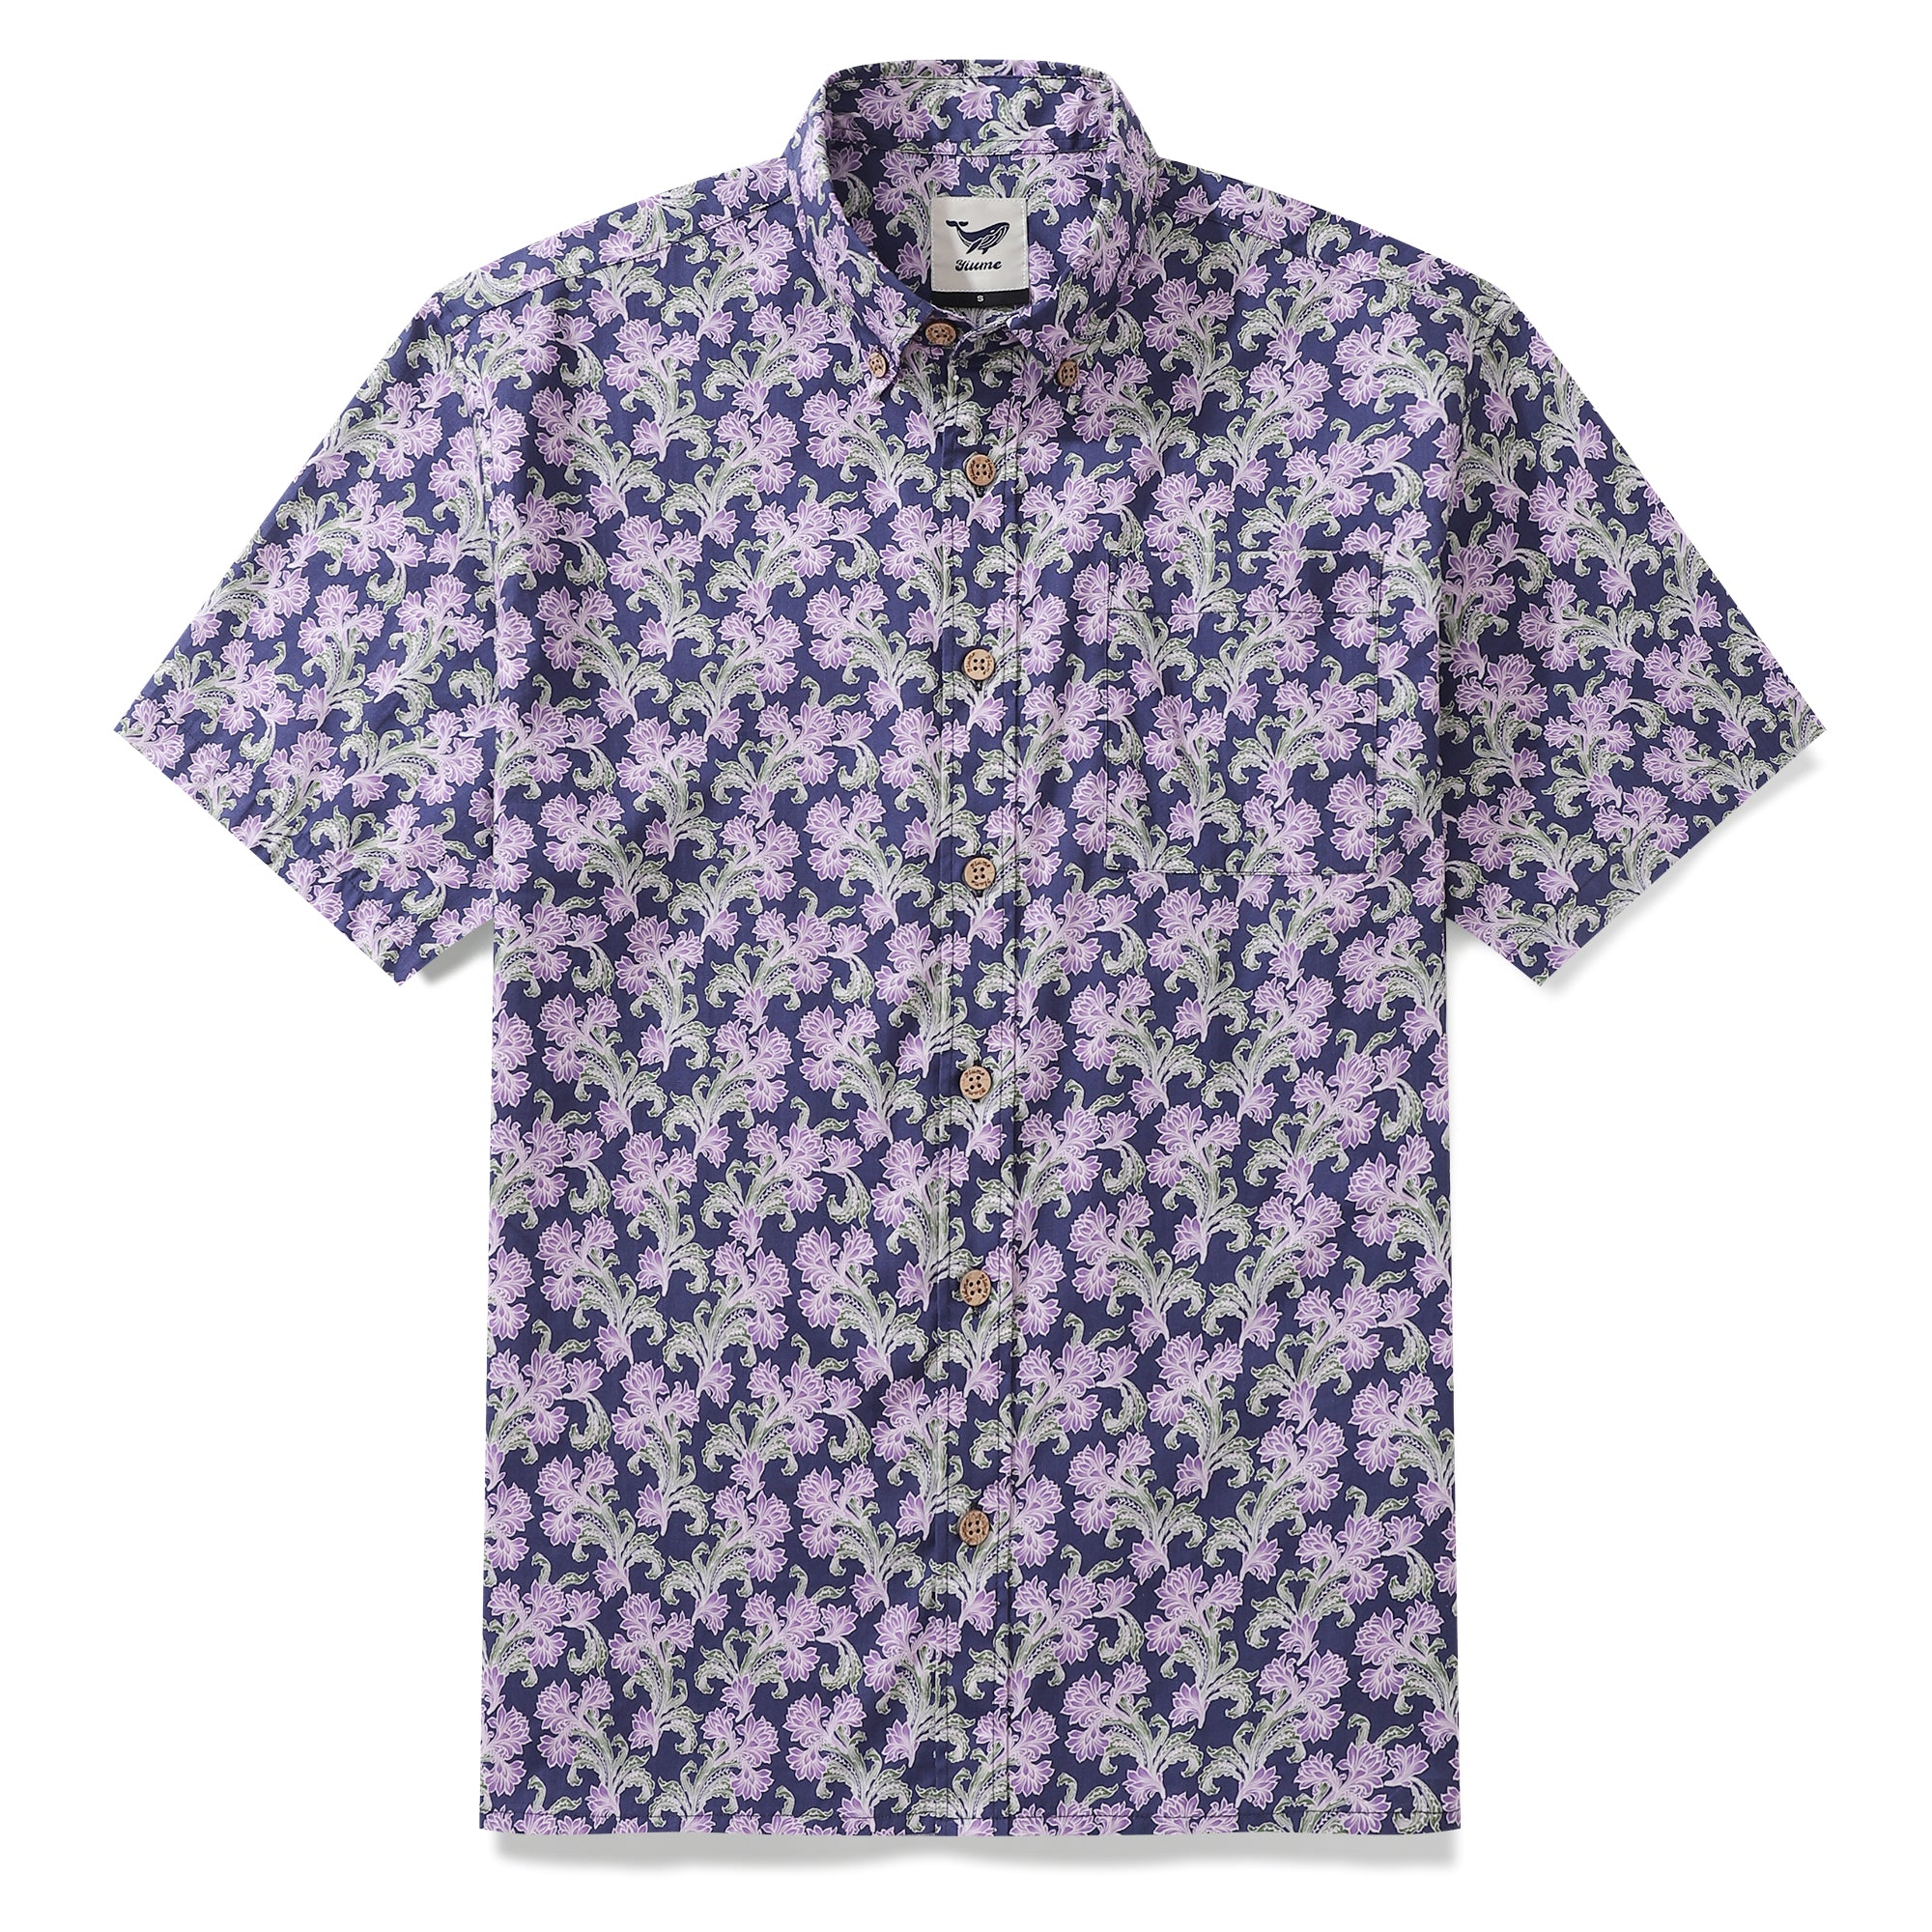 Camisa hawaiana de algodón floral morado con botones para hombre